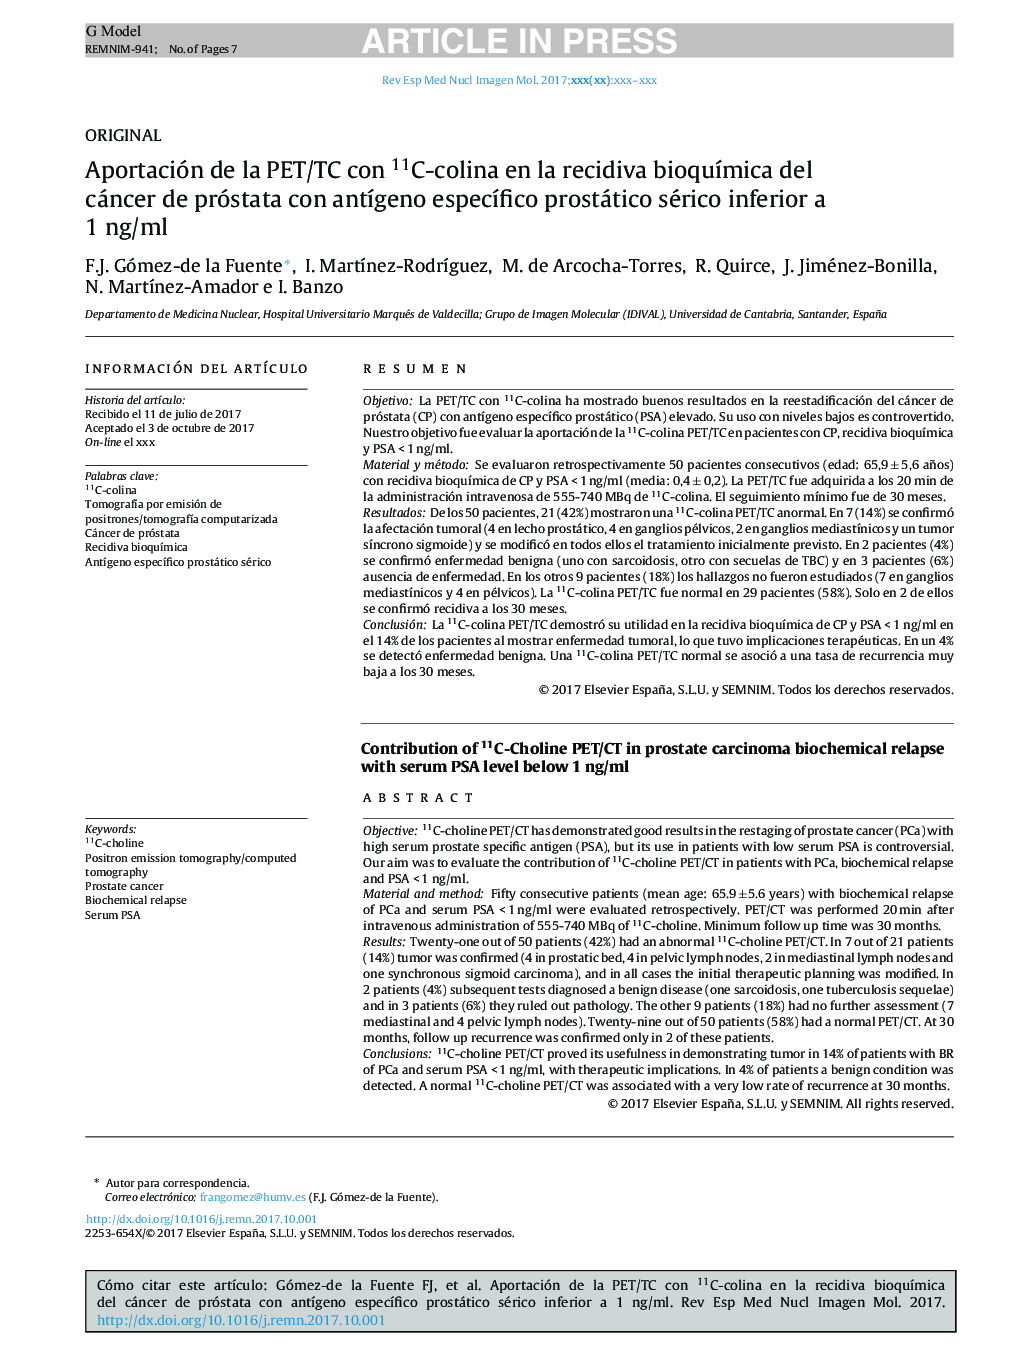 Aportación de la PET/TC con 11C-colina en la recidiva bioquÃ­mica del cáncer de próstata con antÃ­geno especÃ­fico prostático sérico inferior a 1 ng/ml